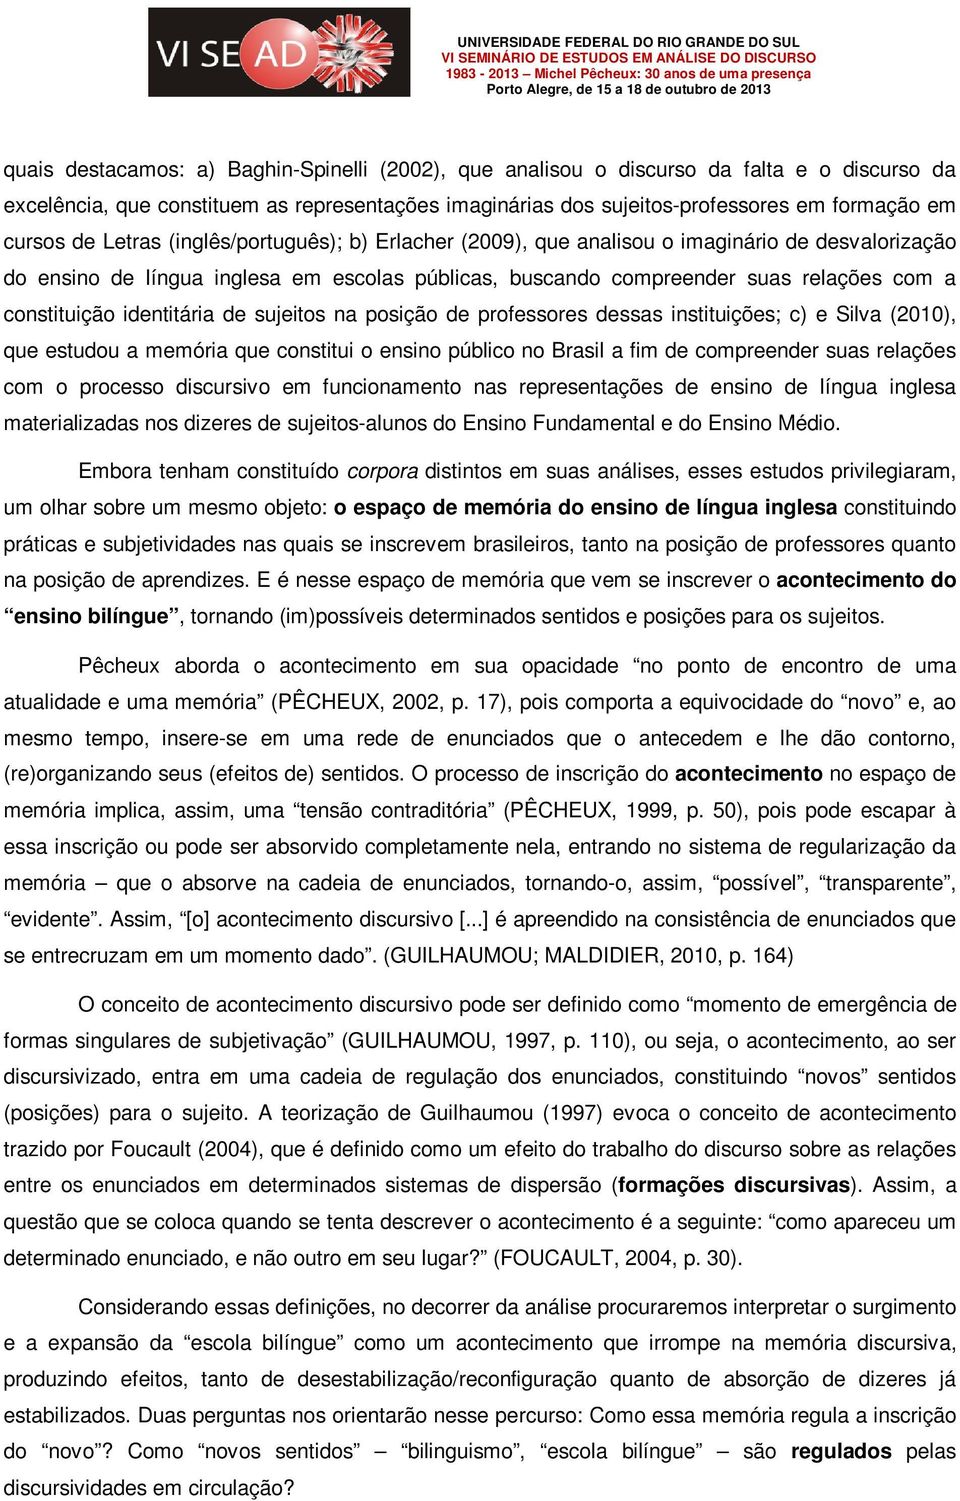 identitária de sujeitos na posição de professores dessas instituições; c) e Silva (2010), que estudou a memória que constitui o ensino público no Brasil a fim de compreender suas relações com o